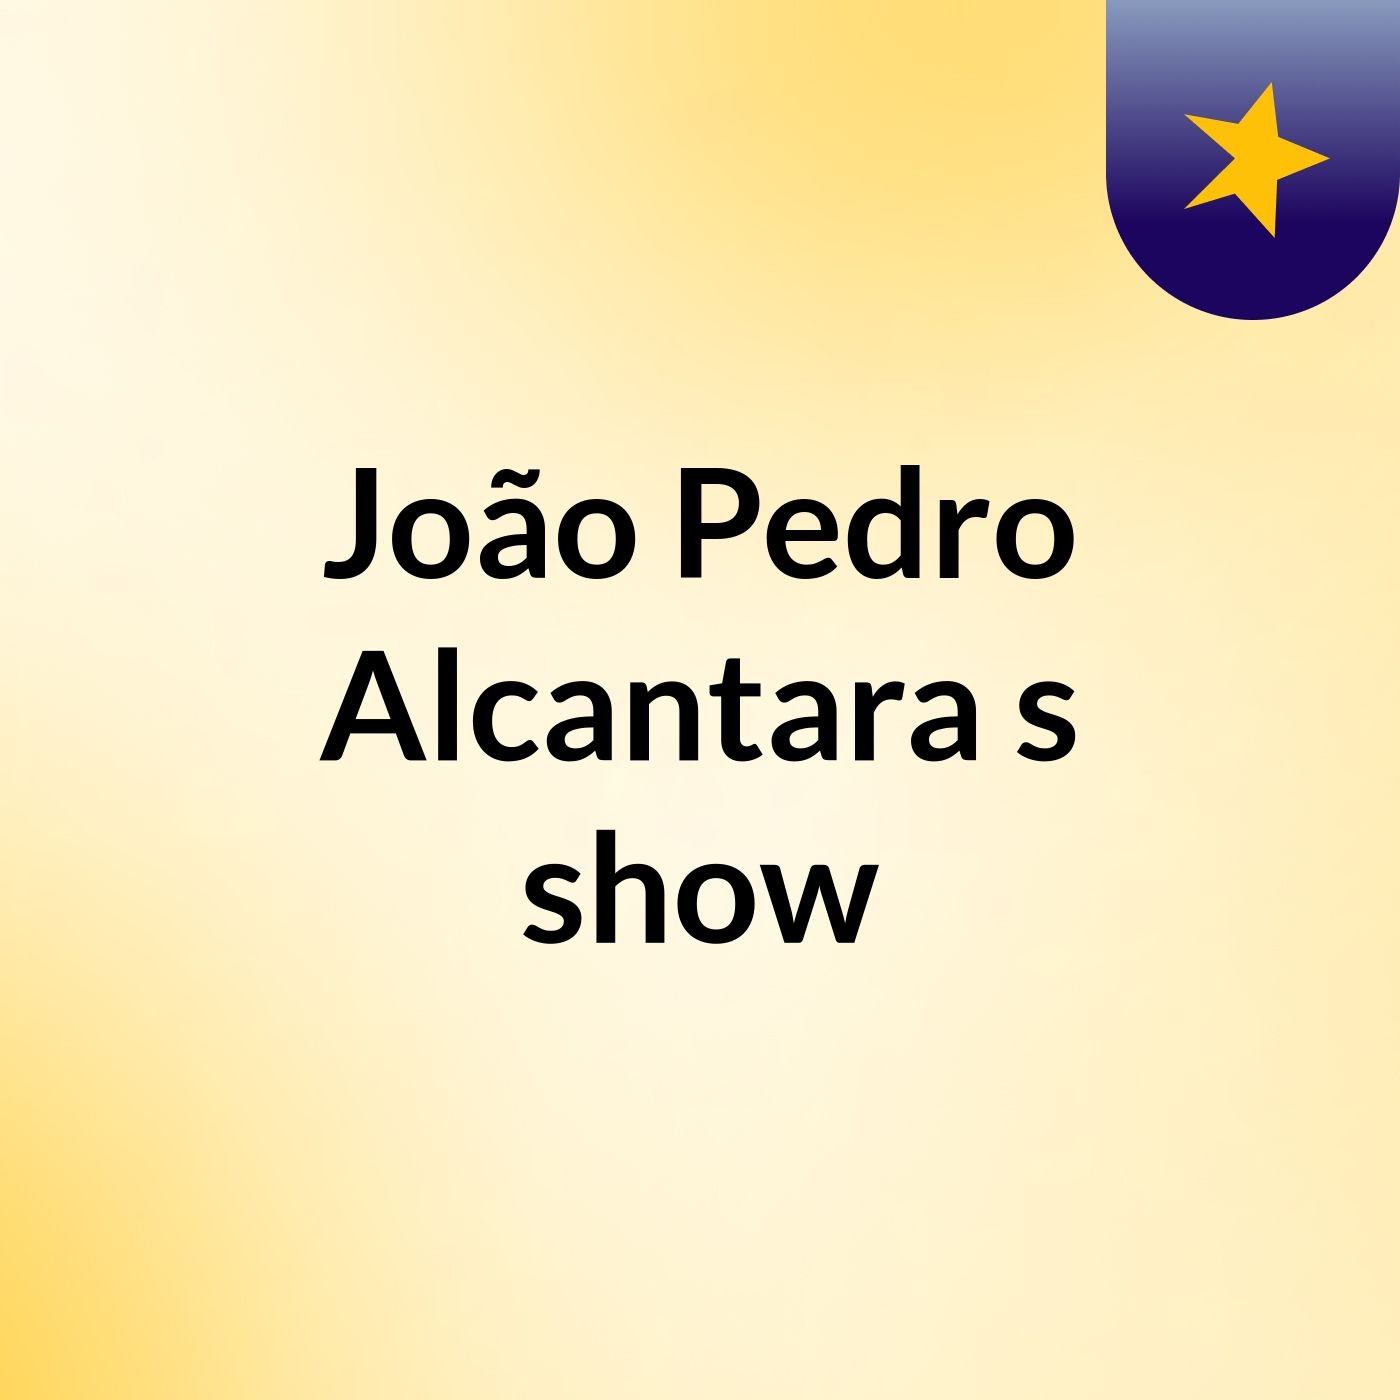 João Pedro Alcantara's show